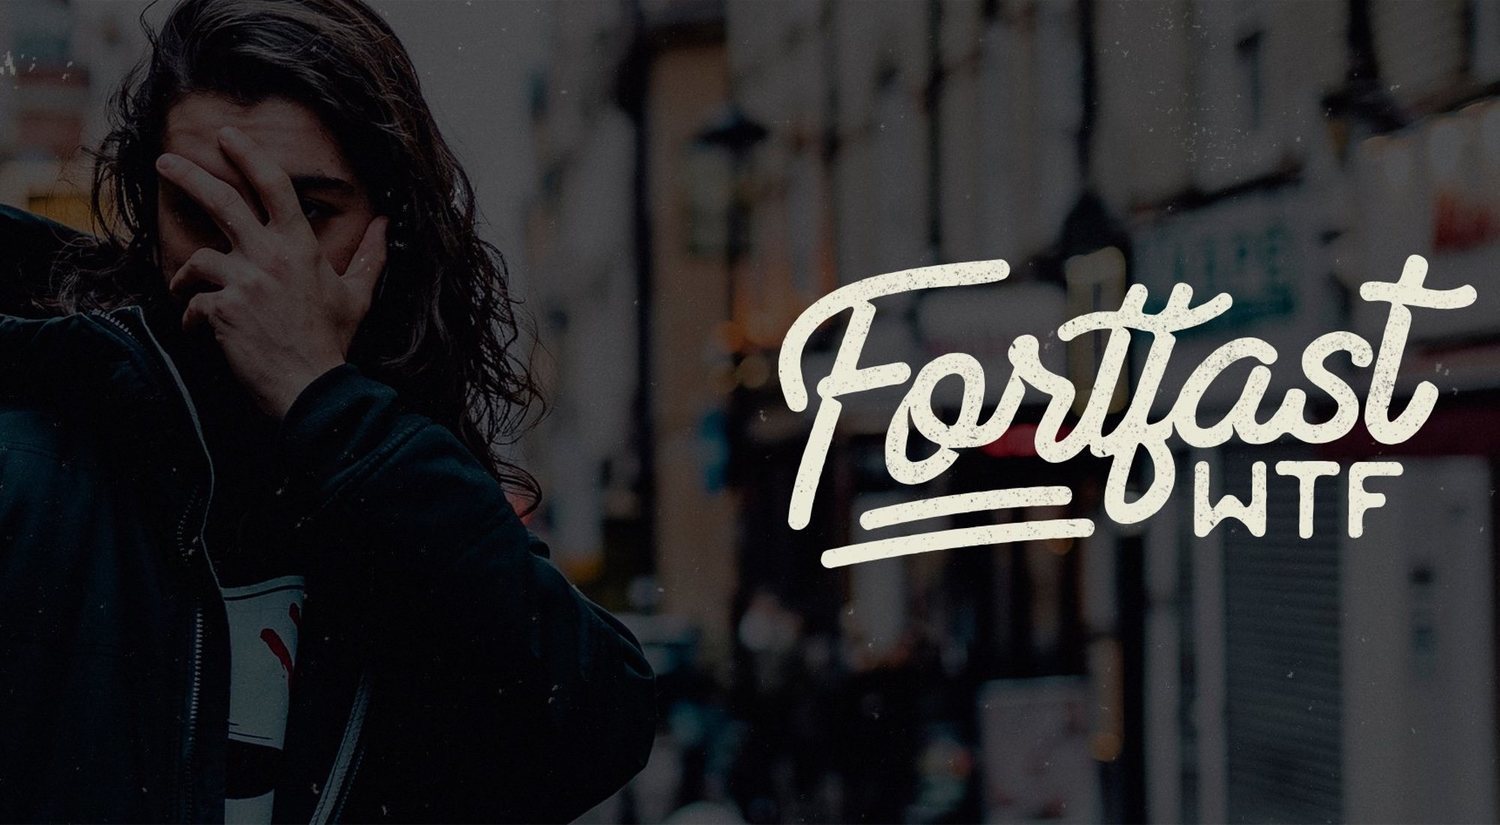 Fortfast WTF: entretenimiento y crítica social para crear un producto original y adictivo